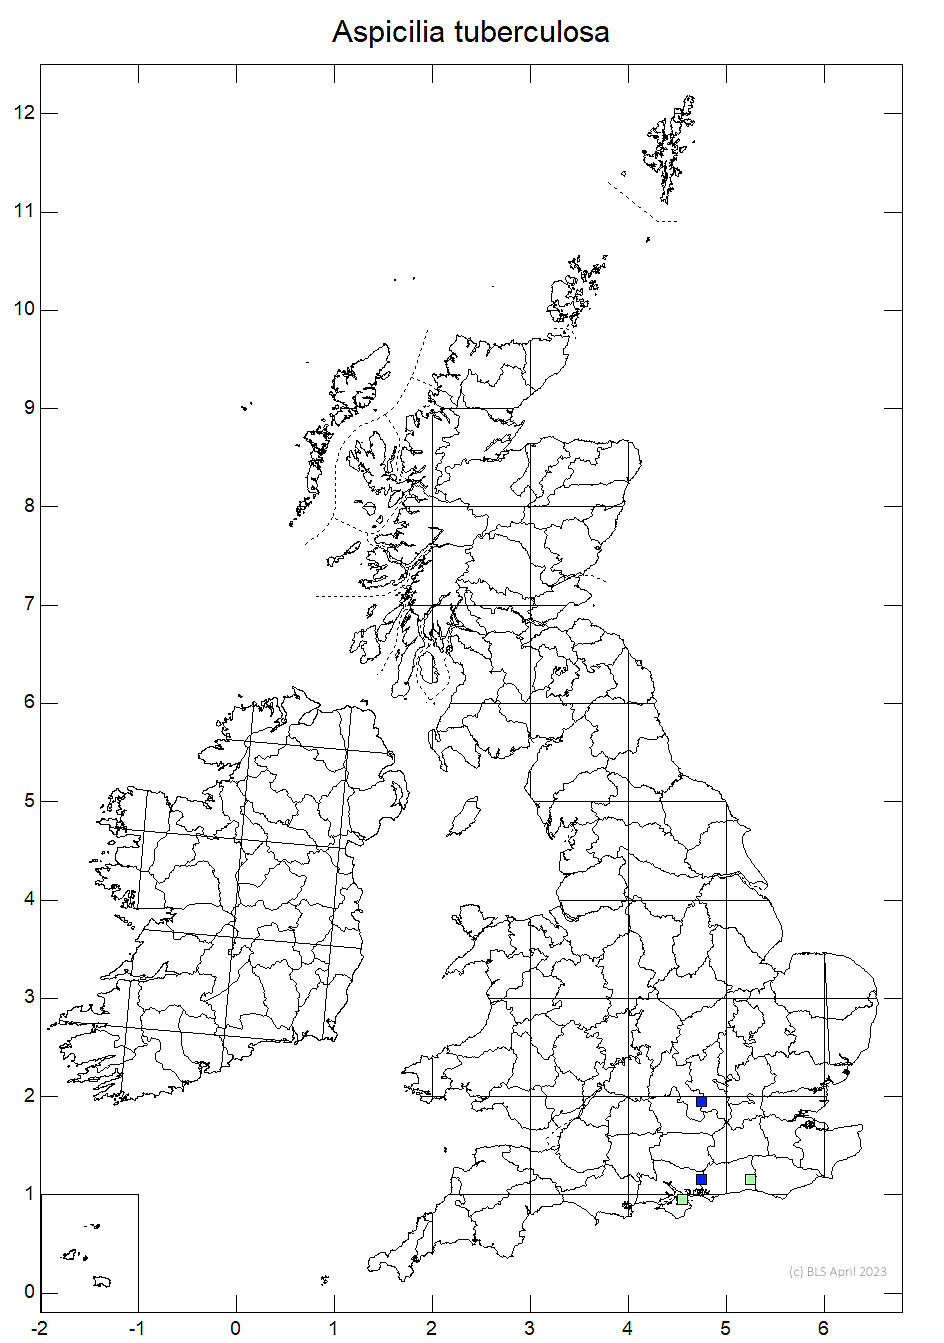 Aspicilia tuberculosa 10km sq distribution map